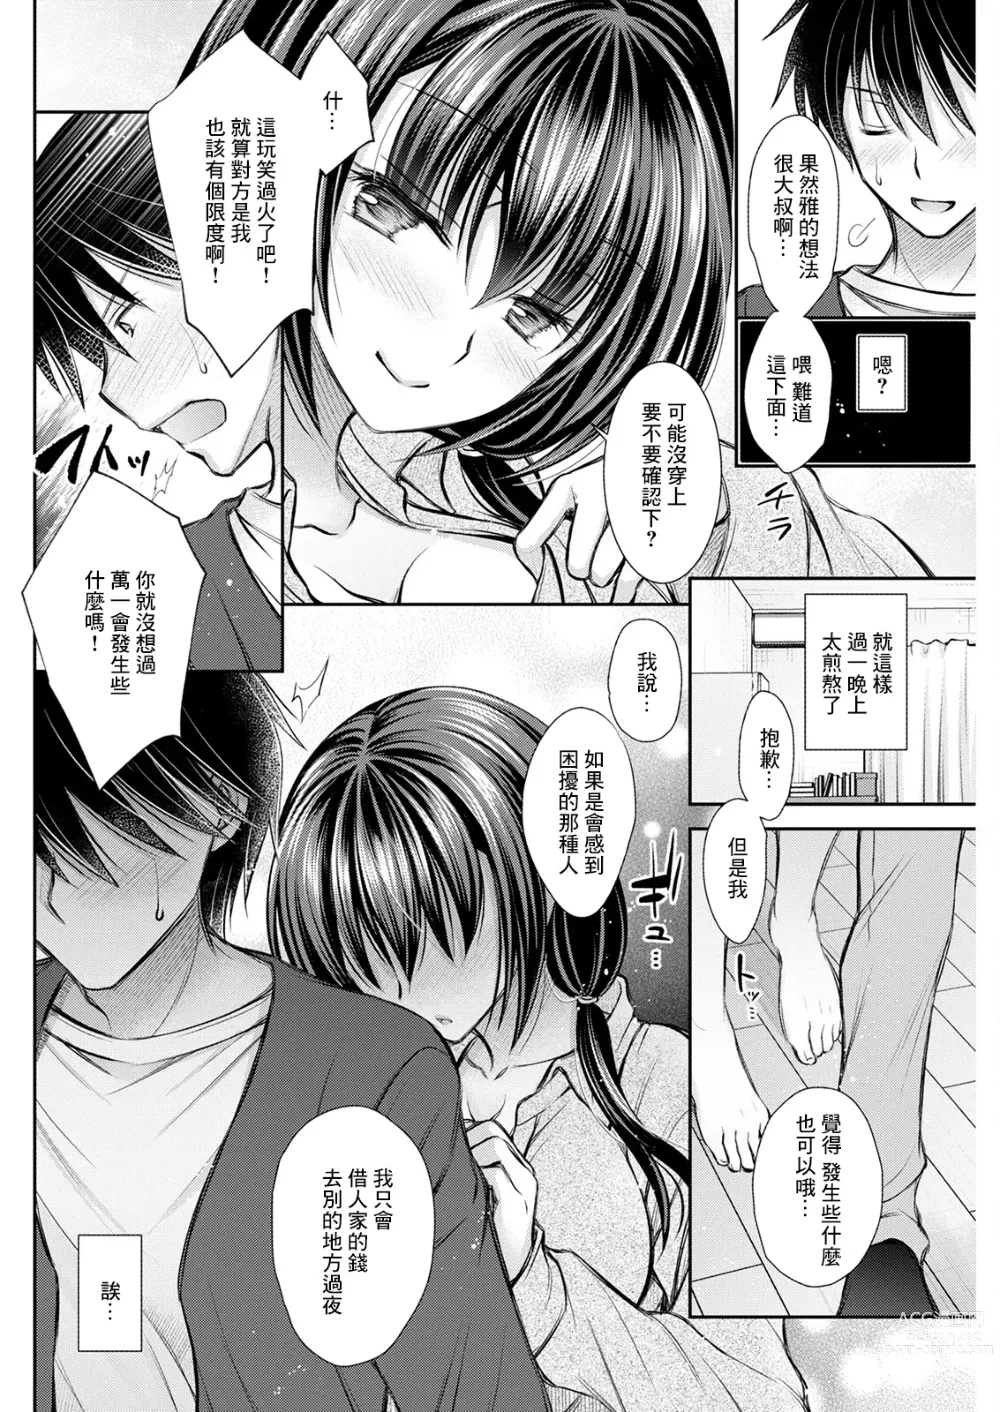 Page 4 of manga Hang Out